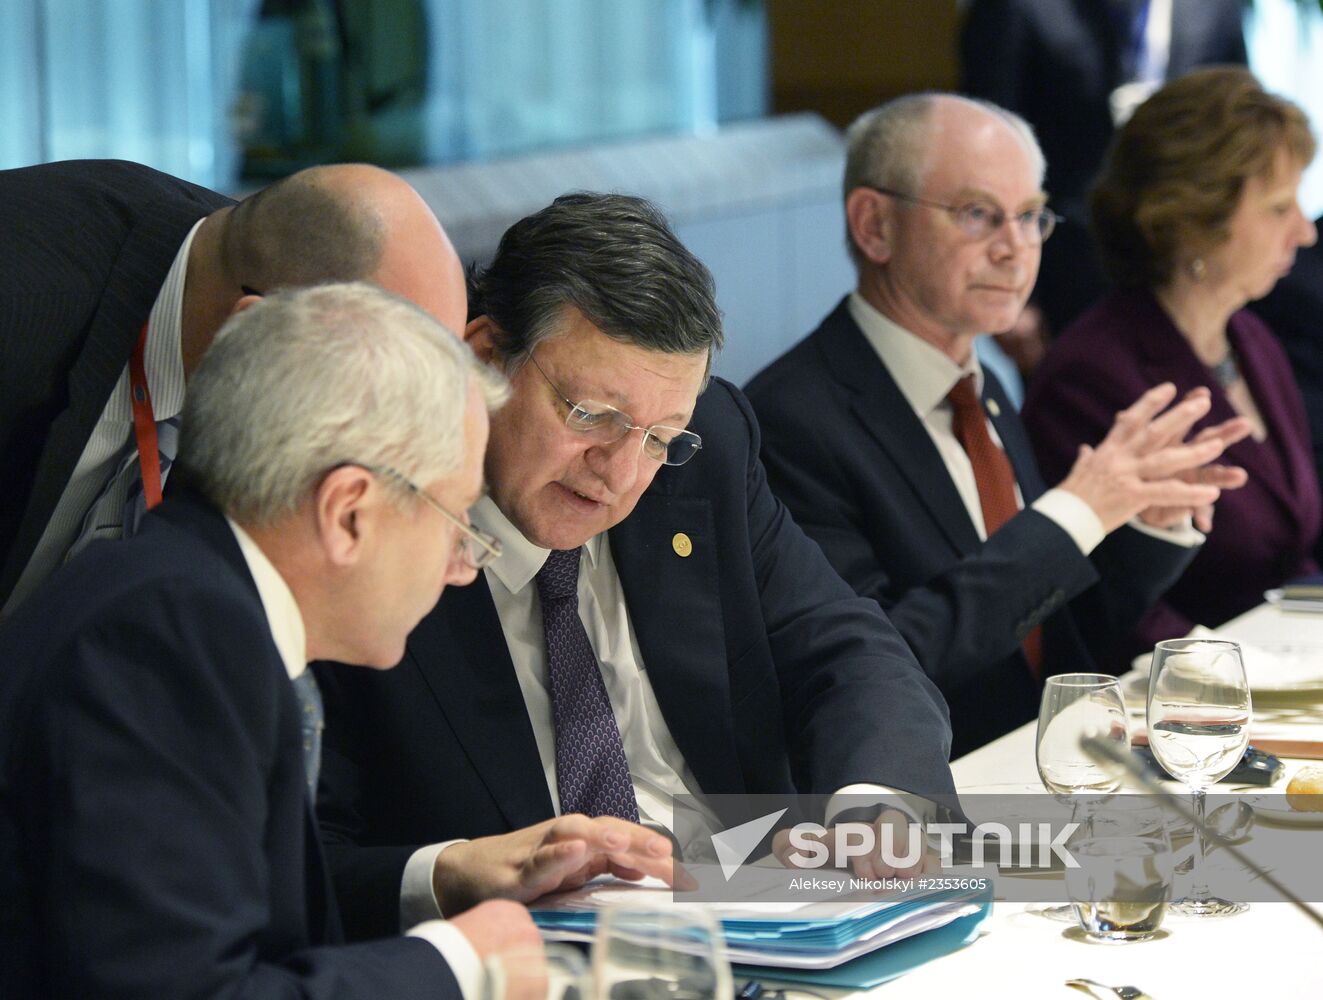 Russia-EU summit in Brussels